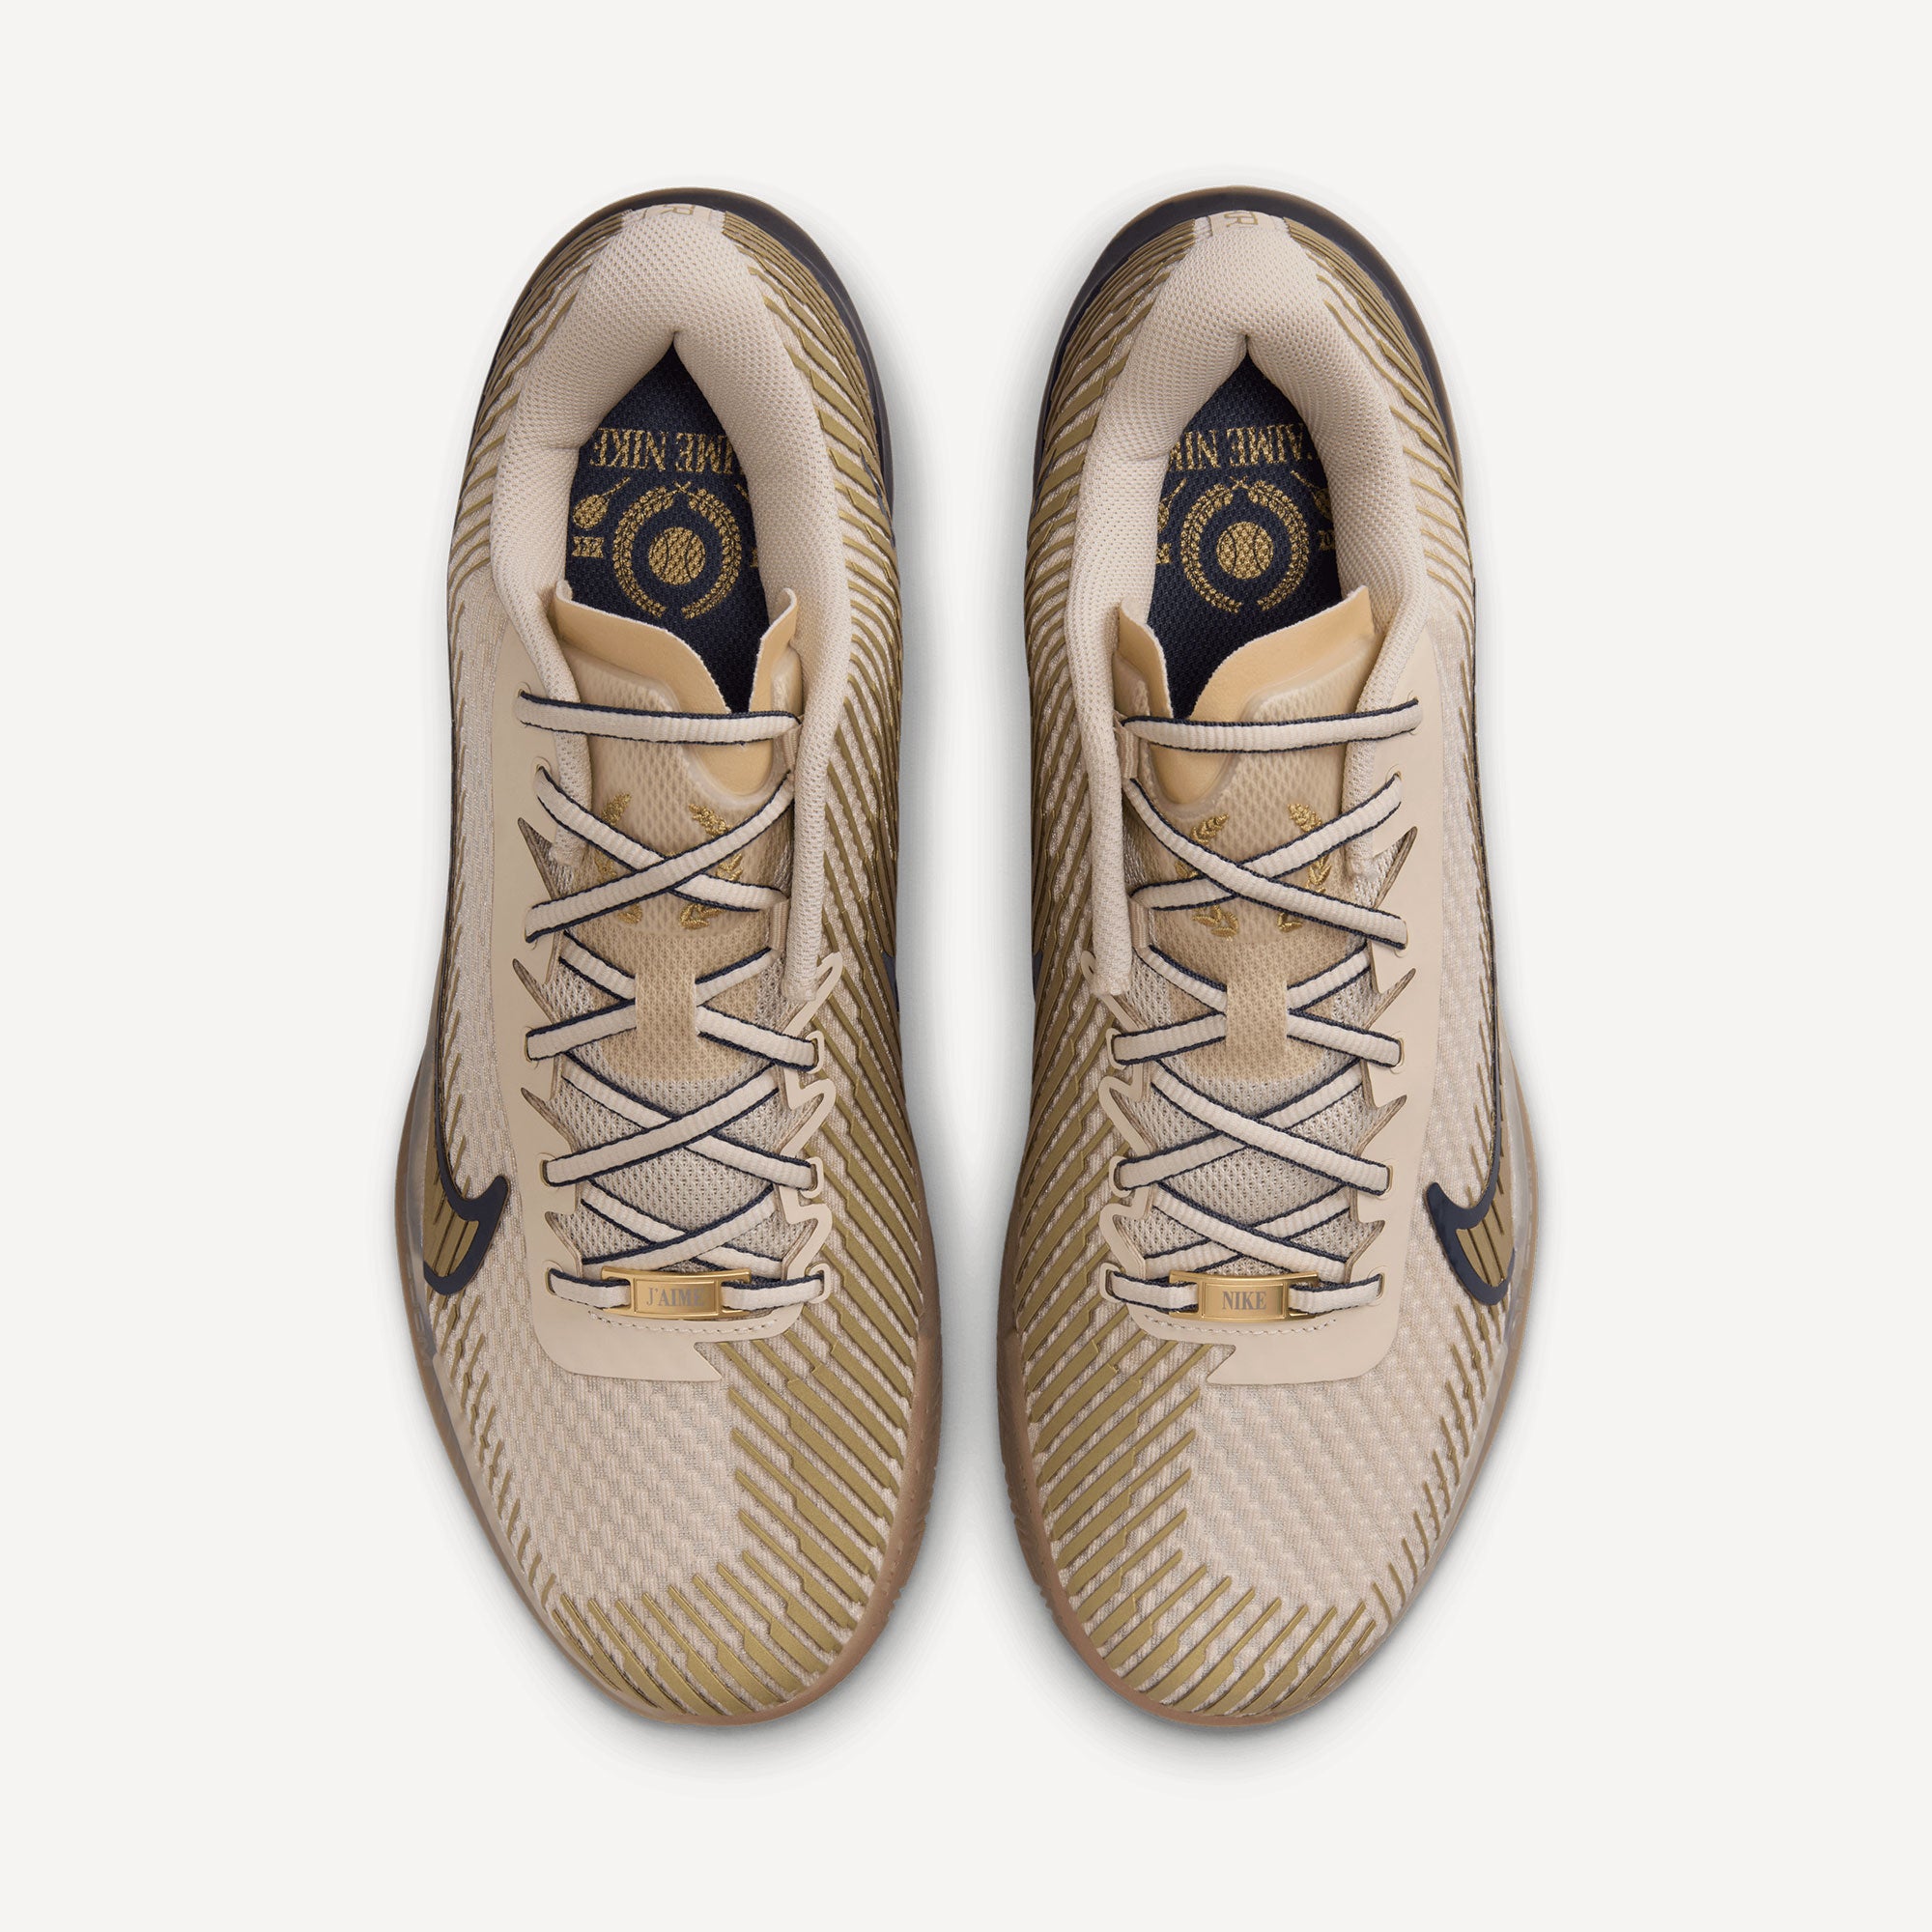 NikeCourt Air Zoom Vapor 11 Premium Men's Clay Court Tennis Shoes - Sand (6)